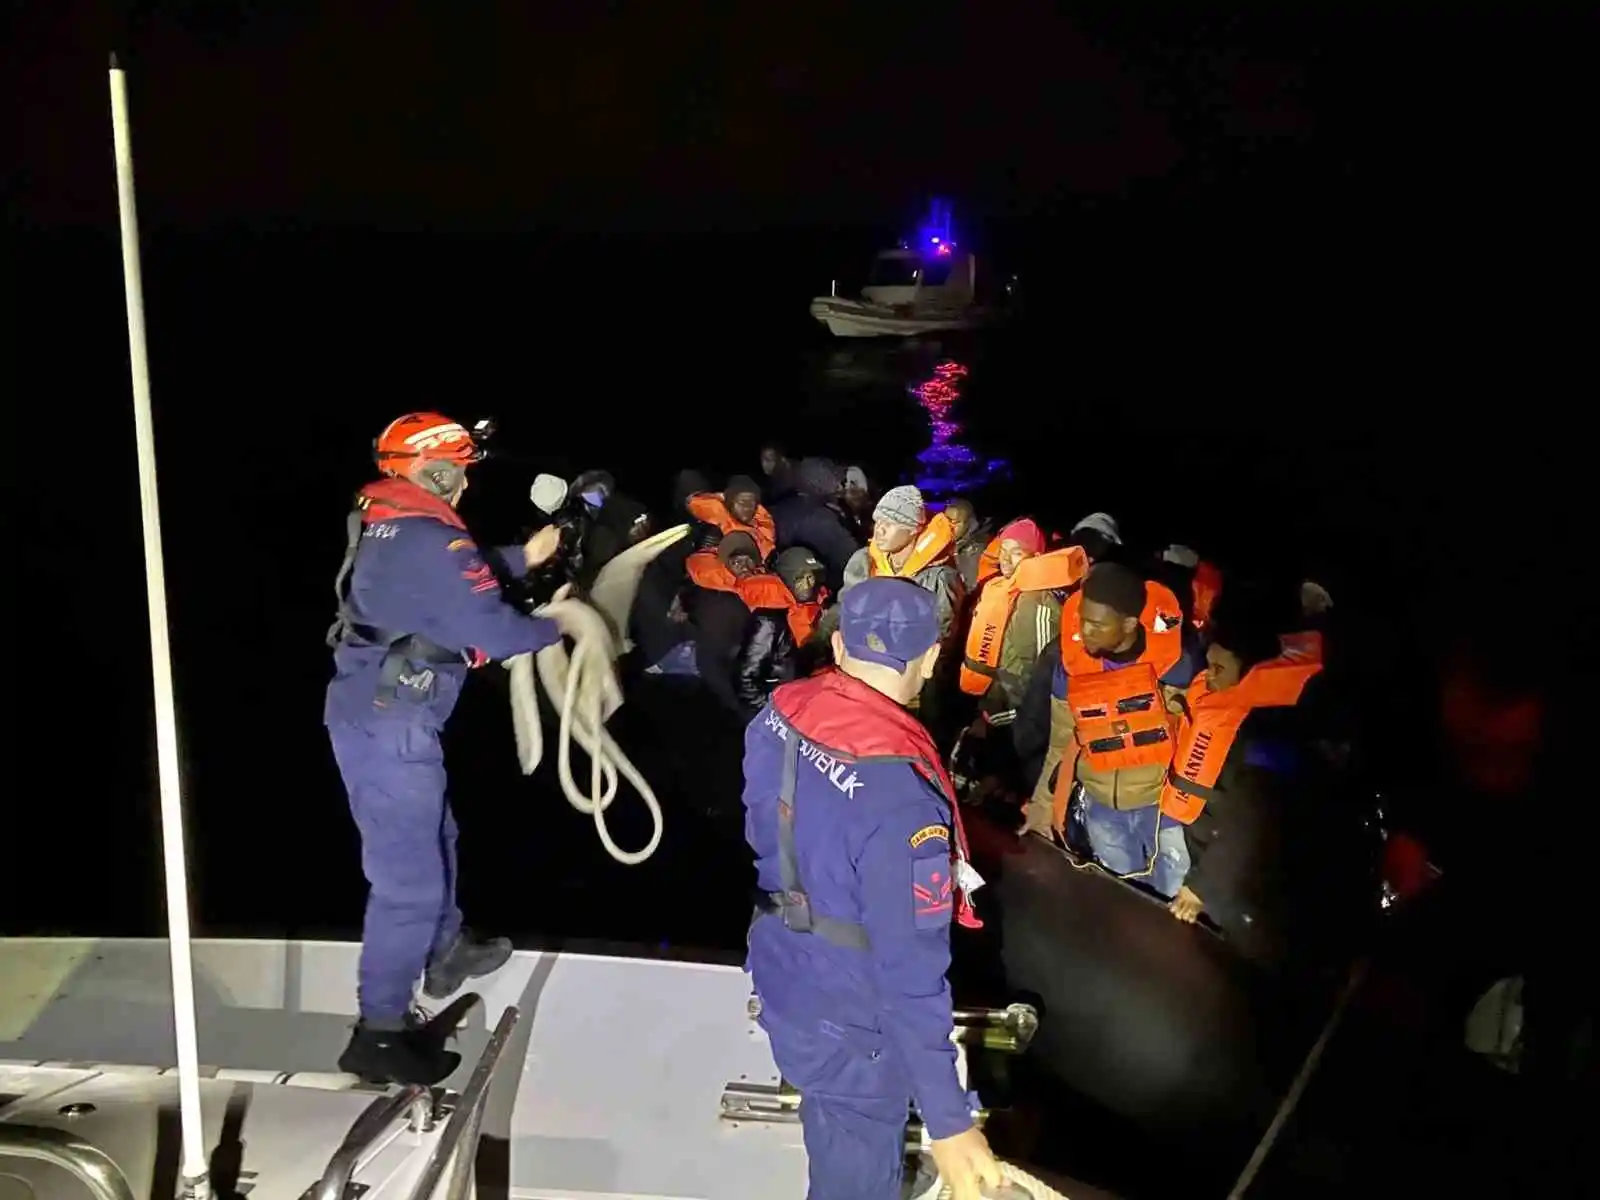 Ege Denizi'nde 90 göçmen yakalandı, 20 göçmen kurtarıldı
